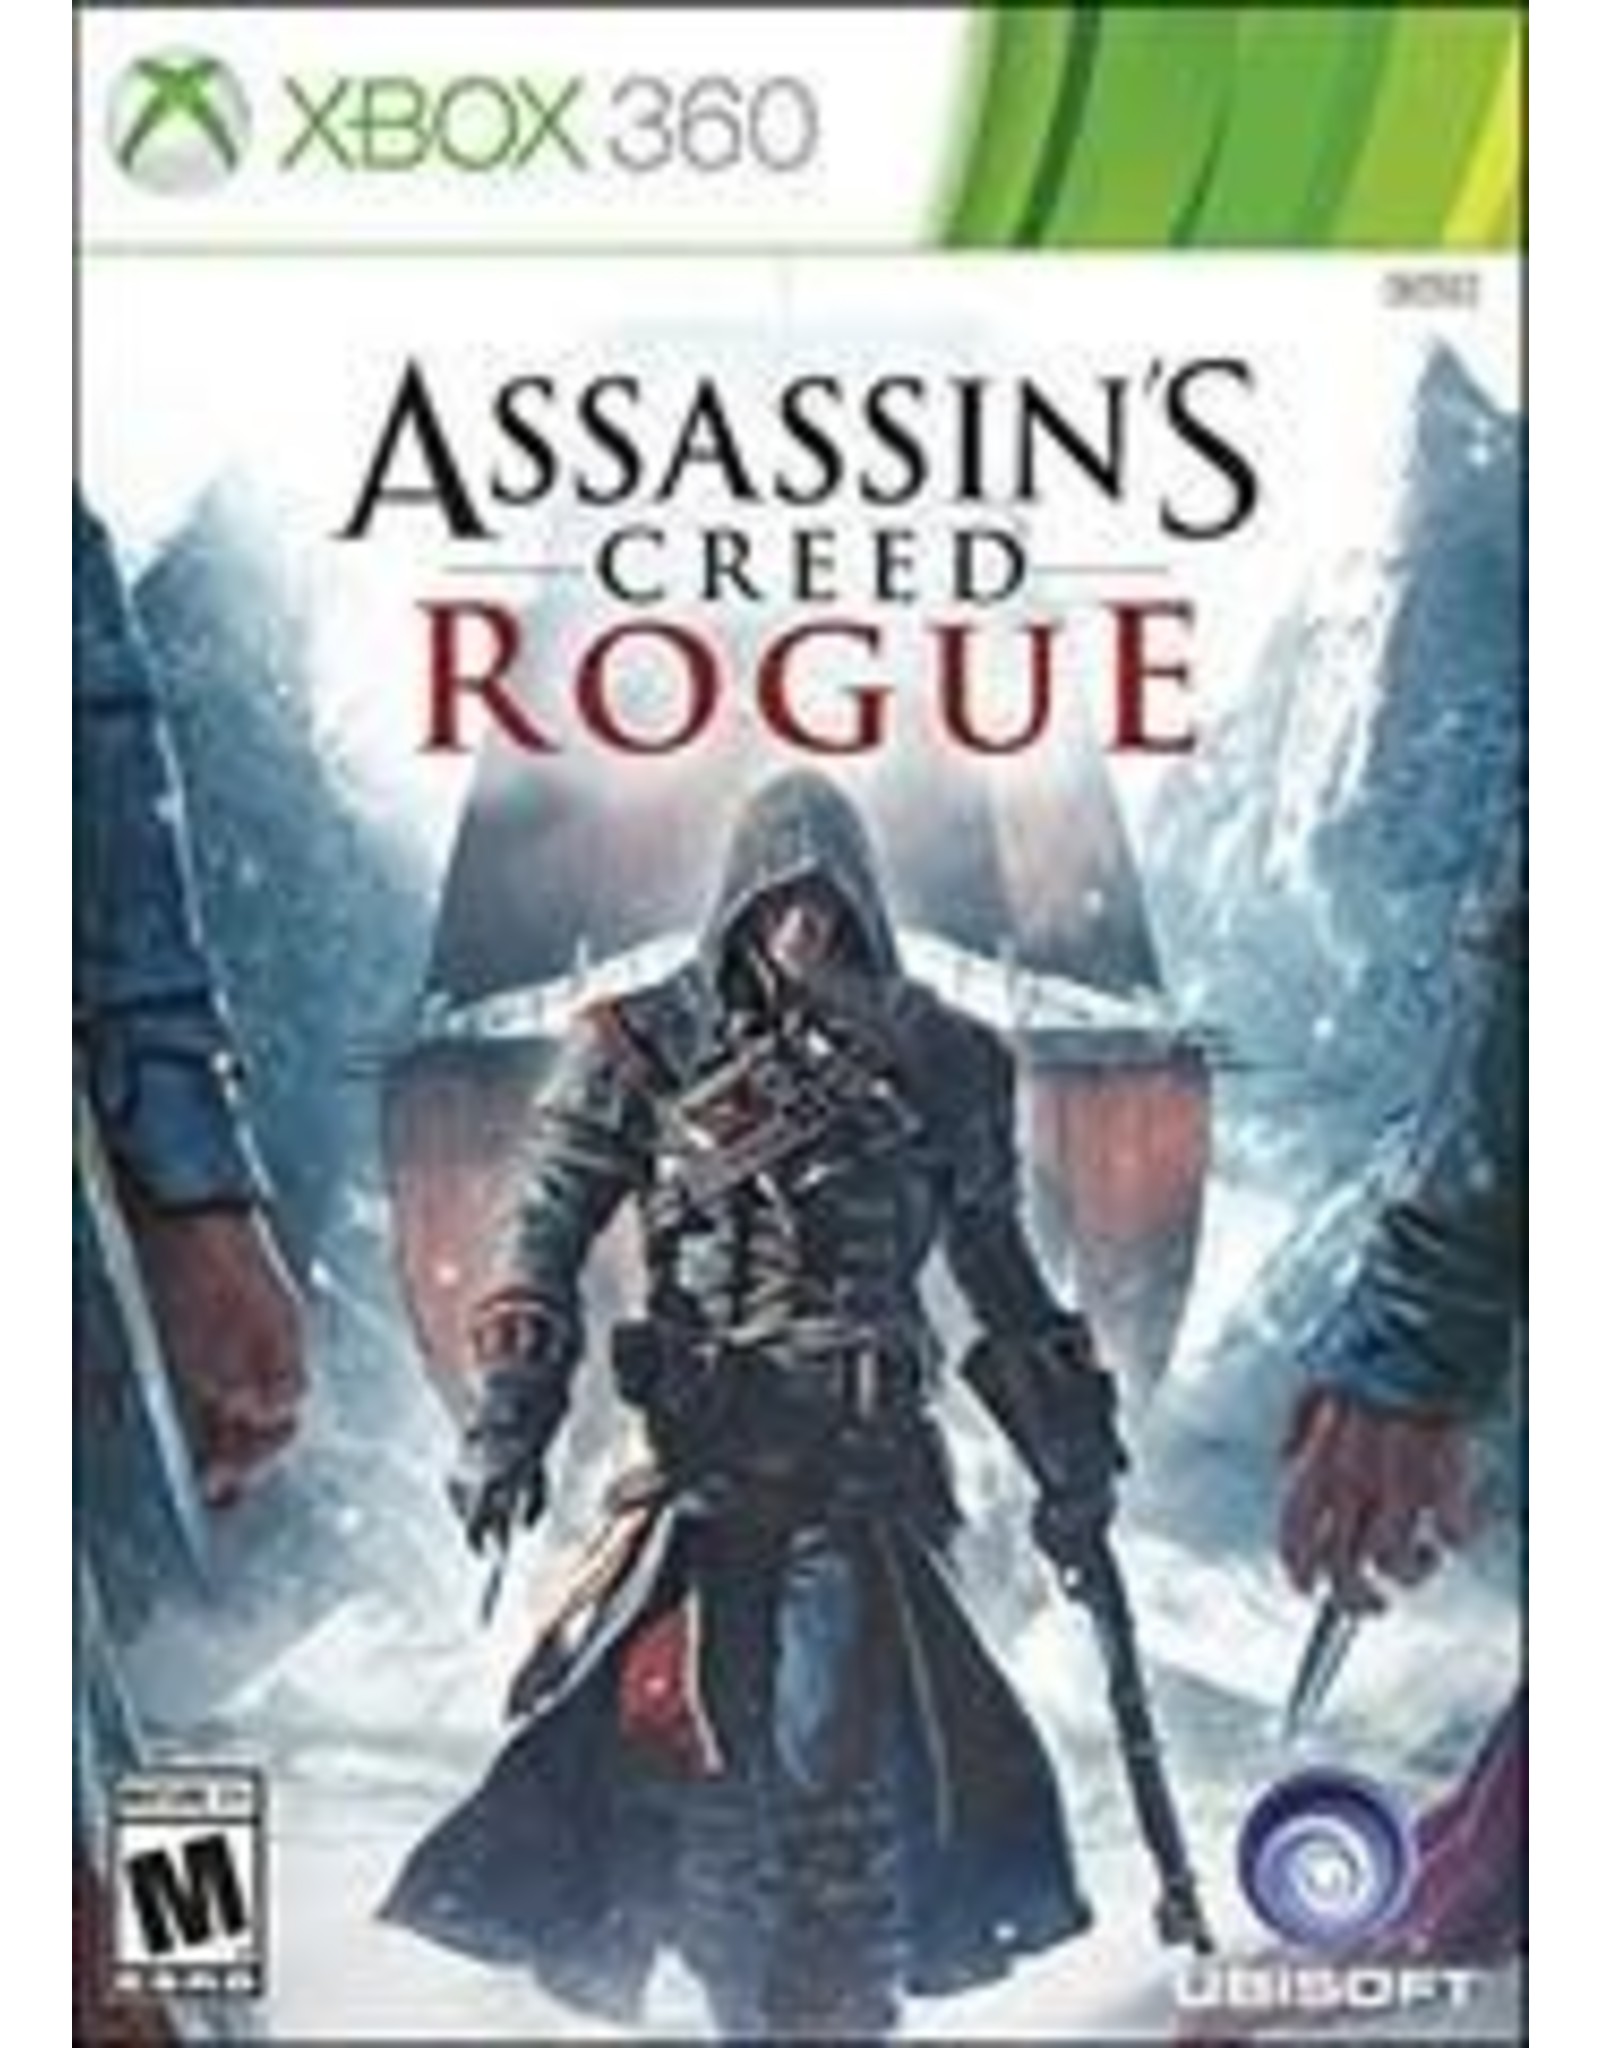 Xbox 360 Assassin's Creed: Rogue (No Manual)